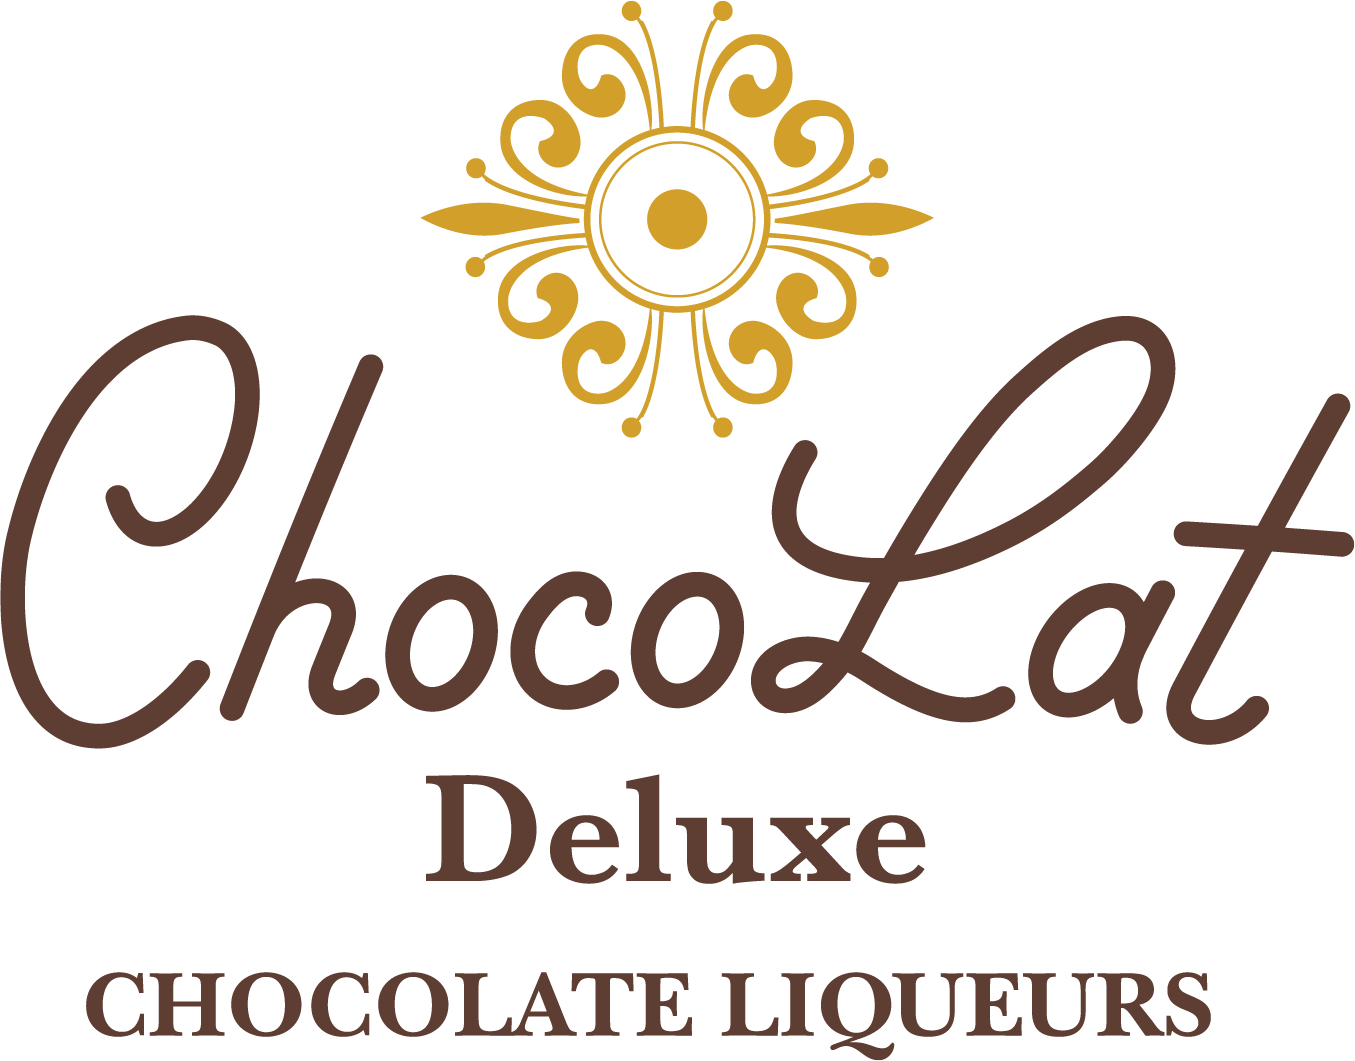 ChocoLat Deluxe Chocolate Liqueurs Walker M.S. –